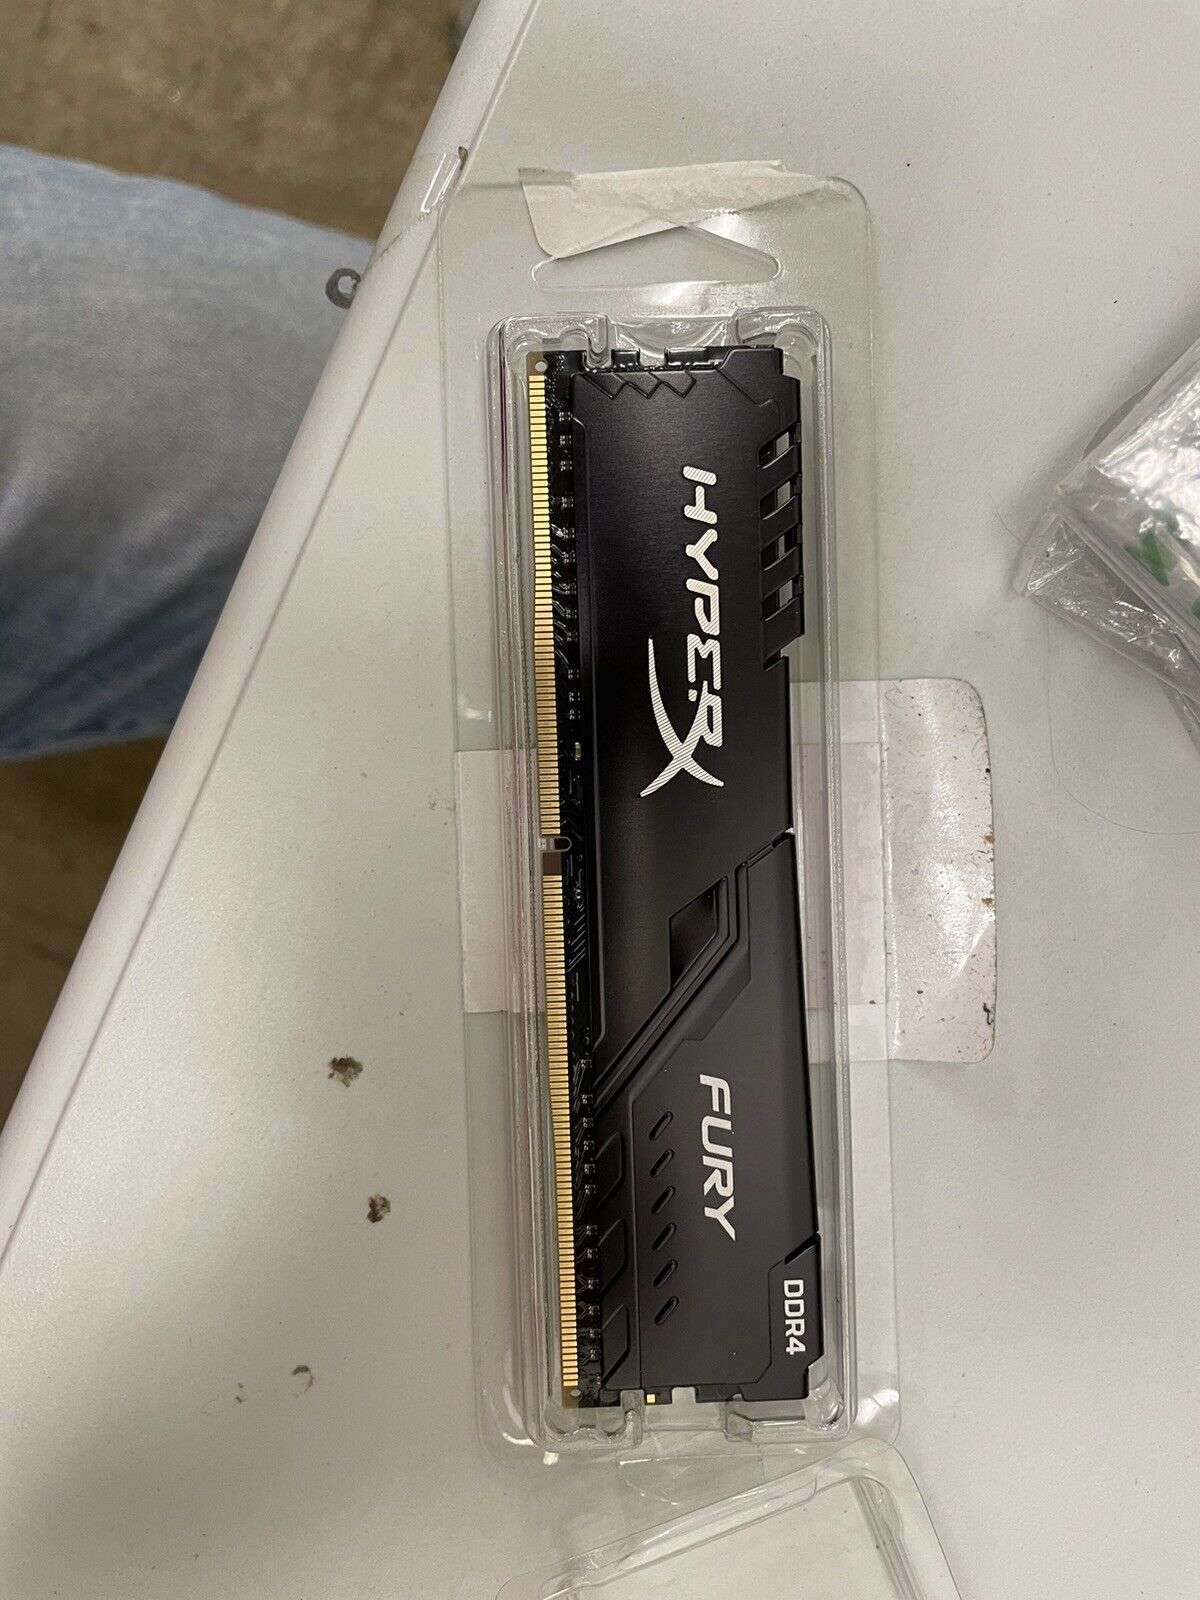 16GB Kingston HyperX Fury PC4-24000 3000MHz CL16 DDR4 Memory Module - Black